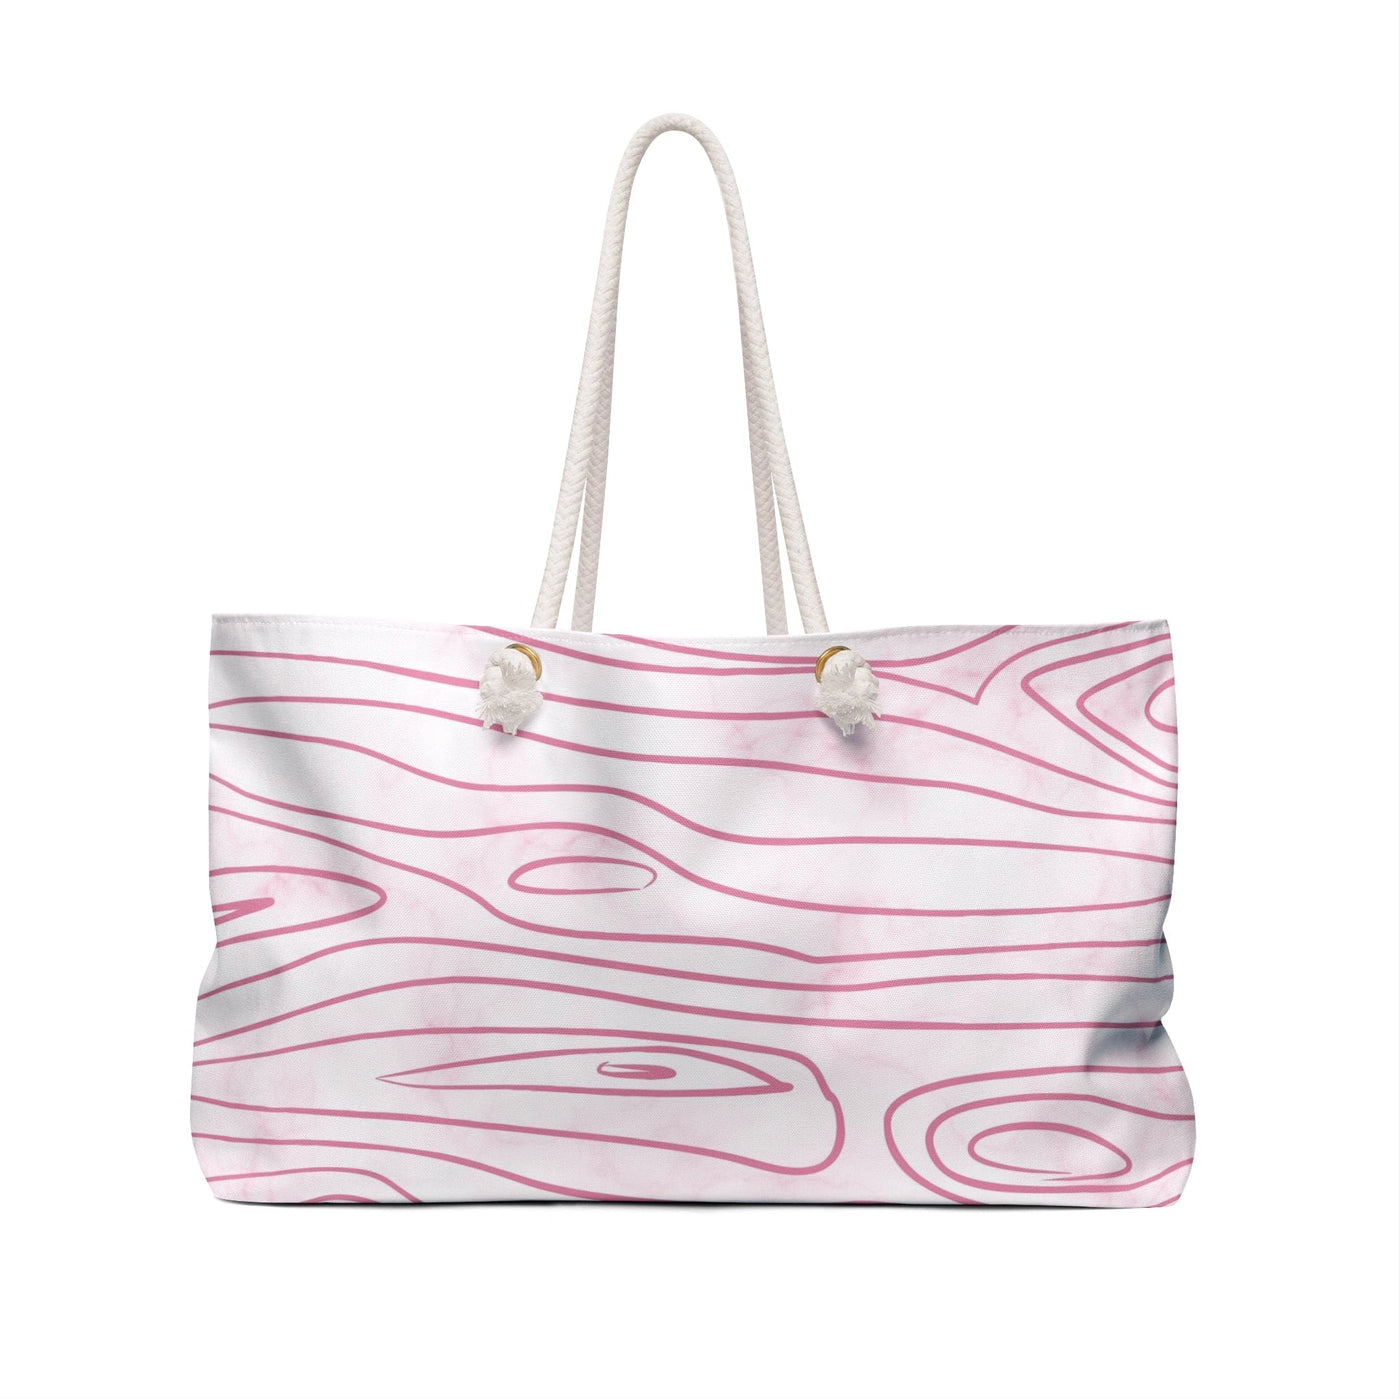 Weekender Tote Bag Pink Line Art Sketch Print - Bags